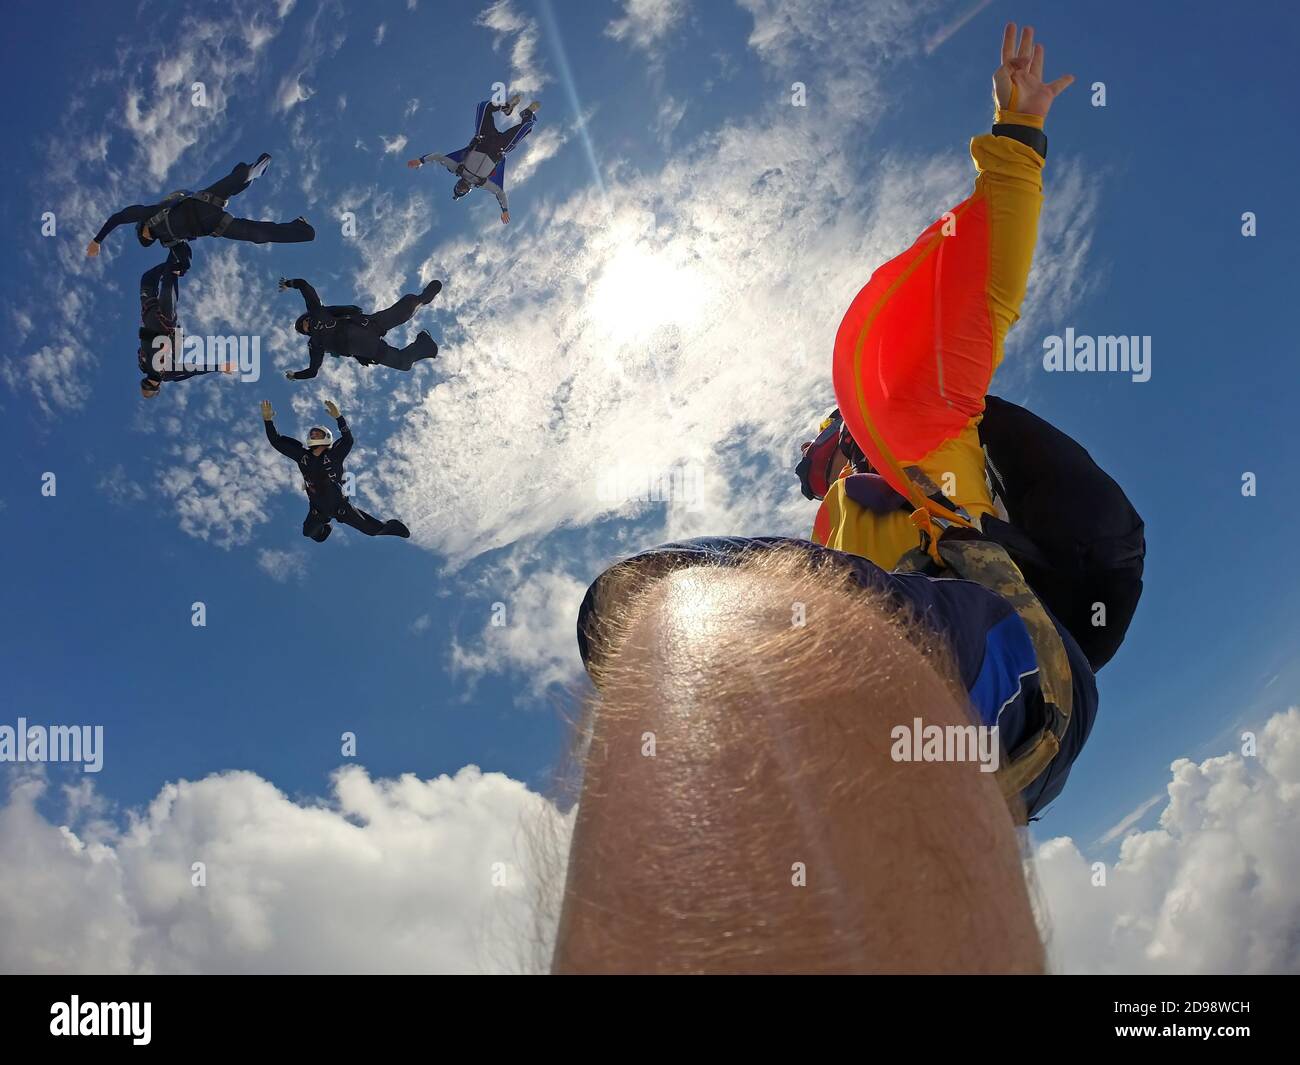 Standpunkt einer Kamera, die am Bein des Fallschirmspringers befestigt ist. Fischaugenlinse verwendet, mit dem Sonnengrund. Stockfoto